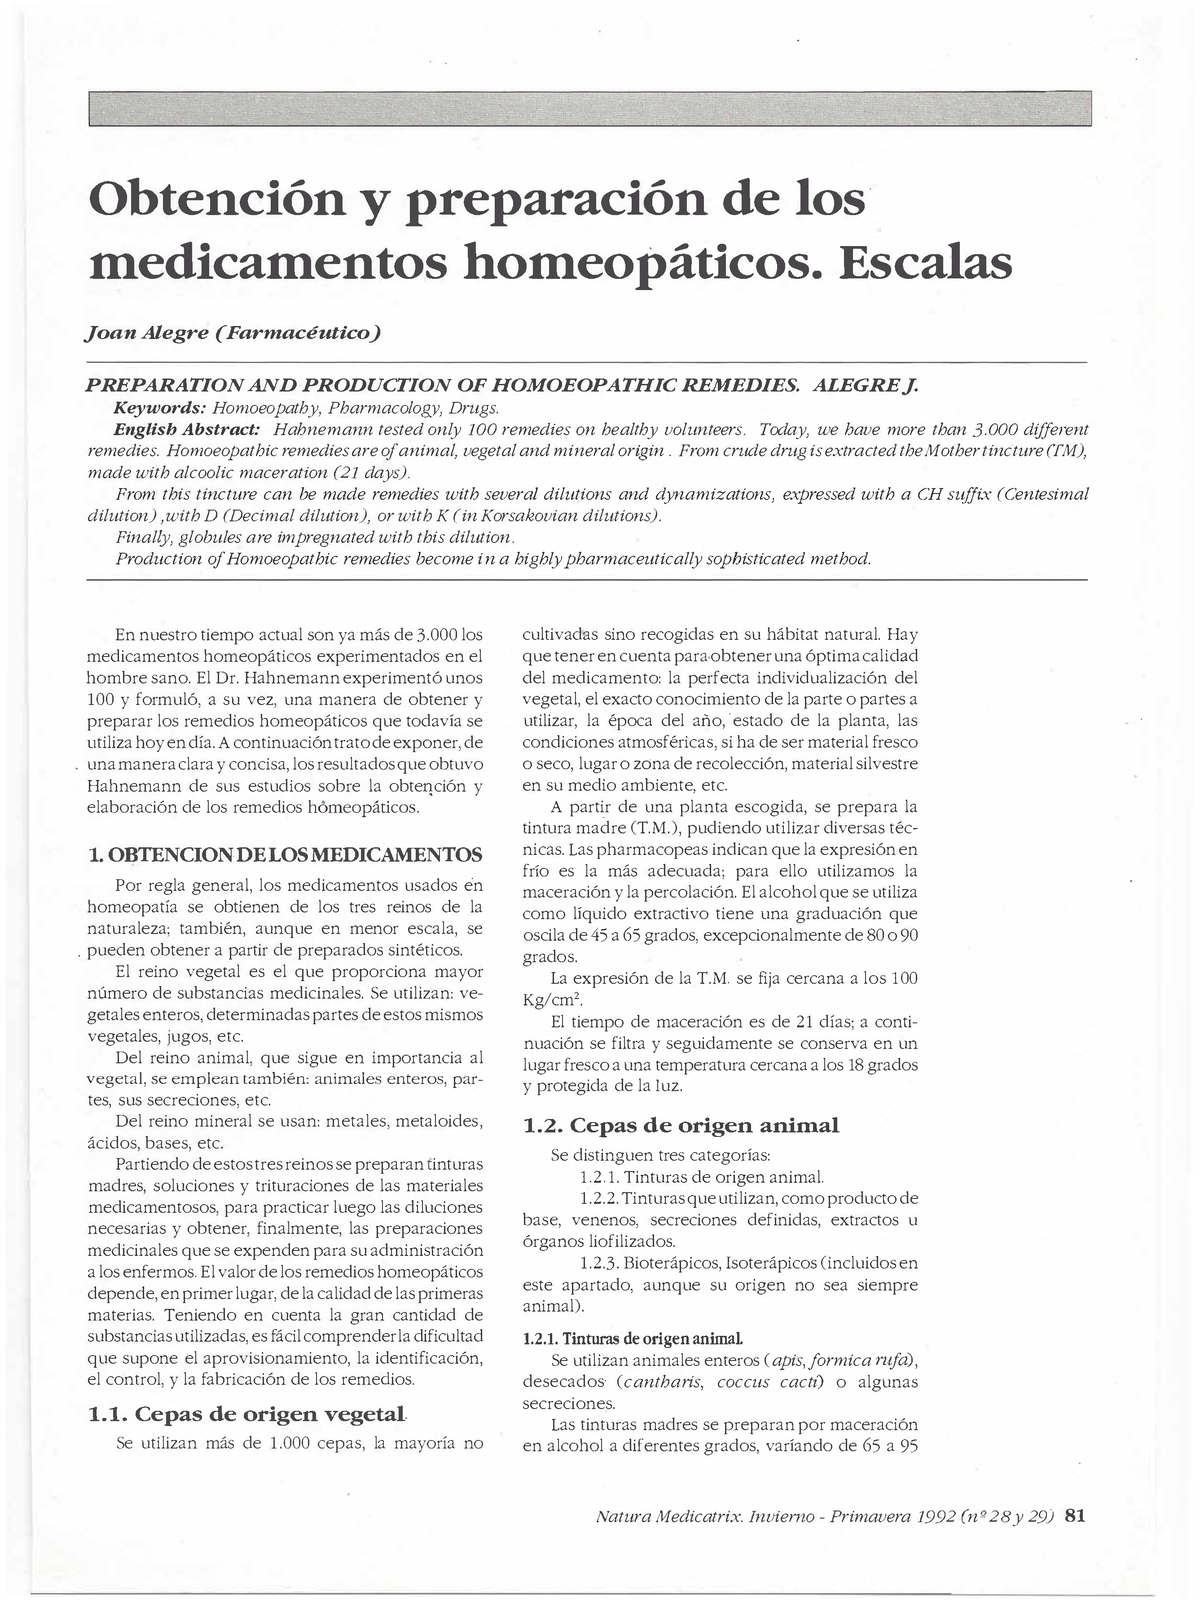 Dialnet Obtencion Ypreparacion De Los Medicamentos Homeopaticos 7096107 Obtención Y 9208